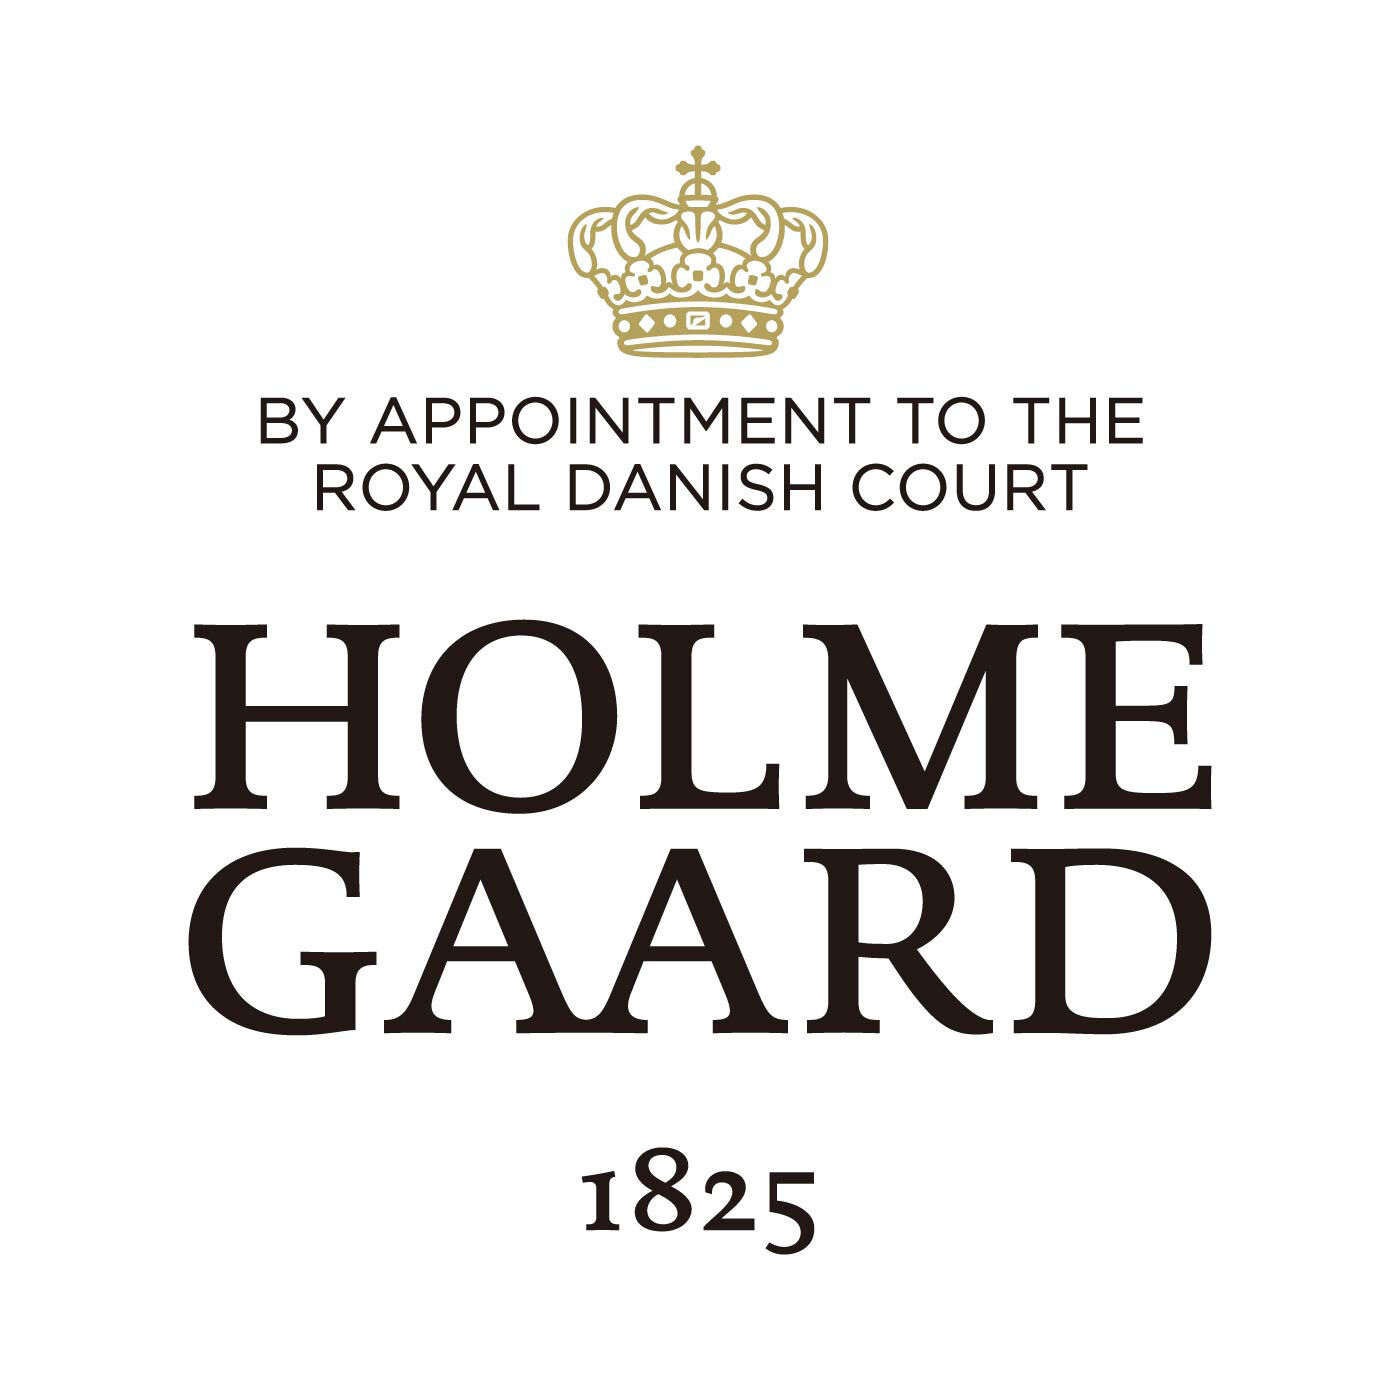 SeeMONO|ガラスのウェーブが美しい　一年中飾れるクリスマスツリー〈Ｌ〉／ホルムガード|HOLMEGAARD（ホルムガード）は、1825年にデンマークに生まれた伝統あるガラスブランドです。1900年代、多くの芸術家が手掛け始めるホルムガードの商品は、そのクオリティの高さからデンマーク王室 御用達ブランドに選ばれました。熟練の職人たちによる吹きガラス製法で生み出されるユニークなデ ザインのガラス製品は世界中の美術館に所蔵されています。